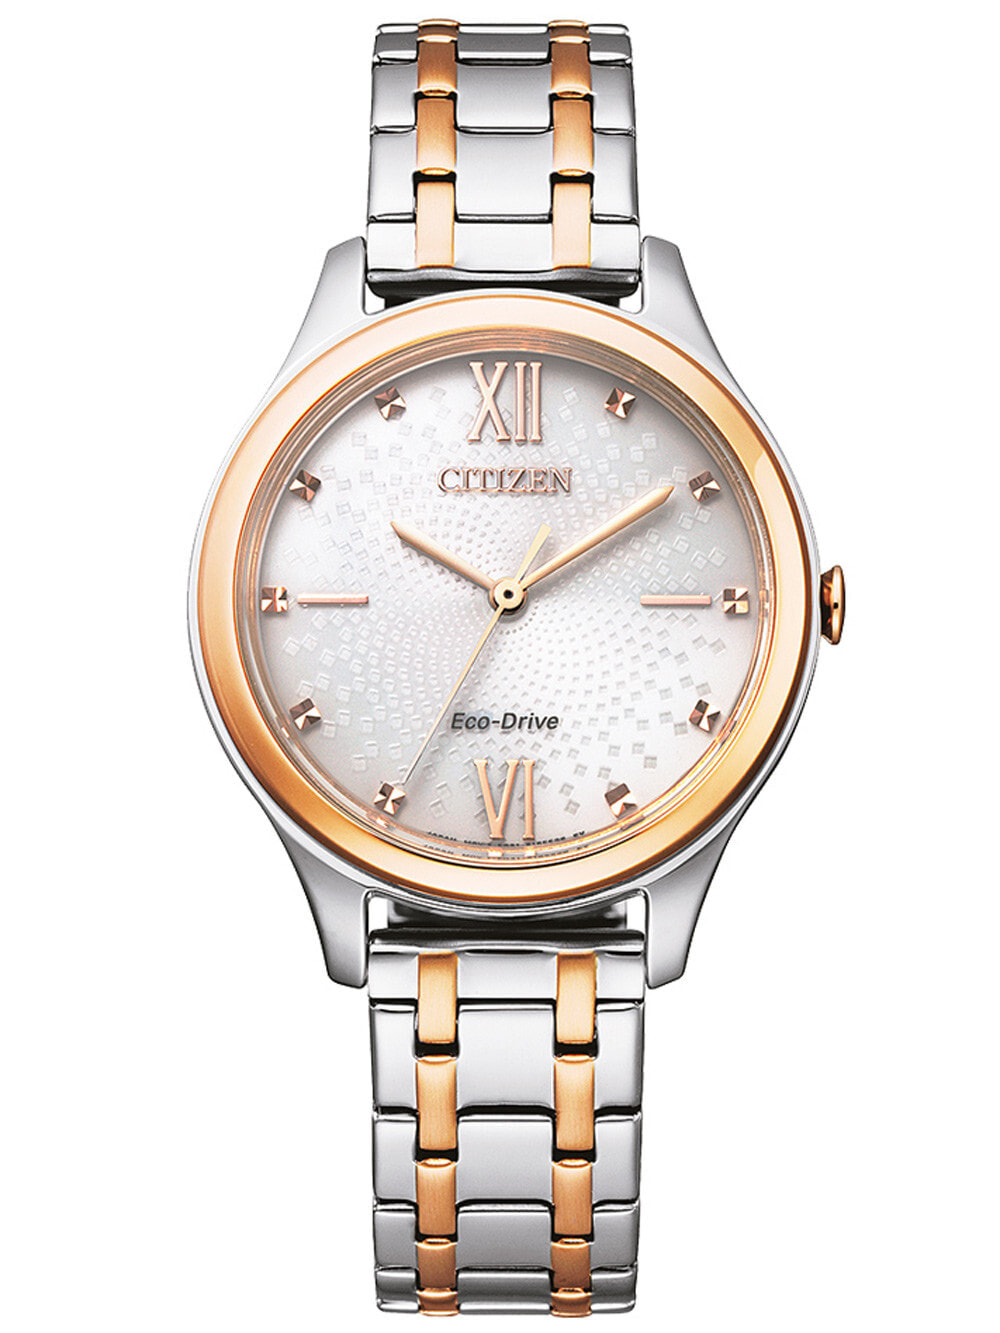 Женские наручные кварцевые часы Citizen стальной с частичным розовым IP покрытием.